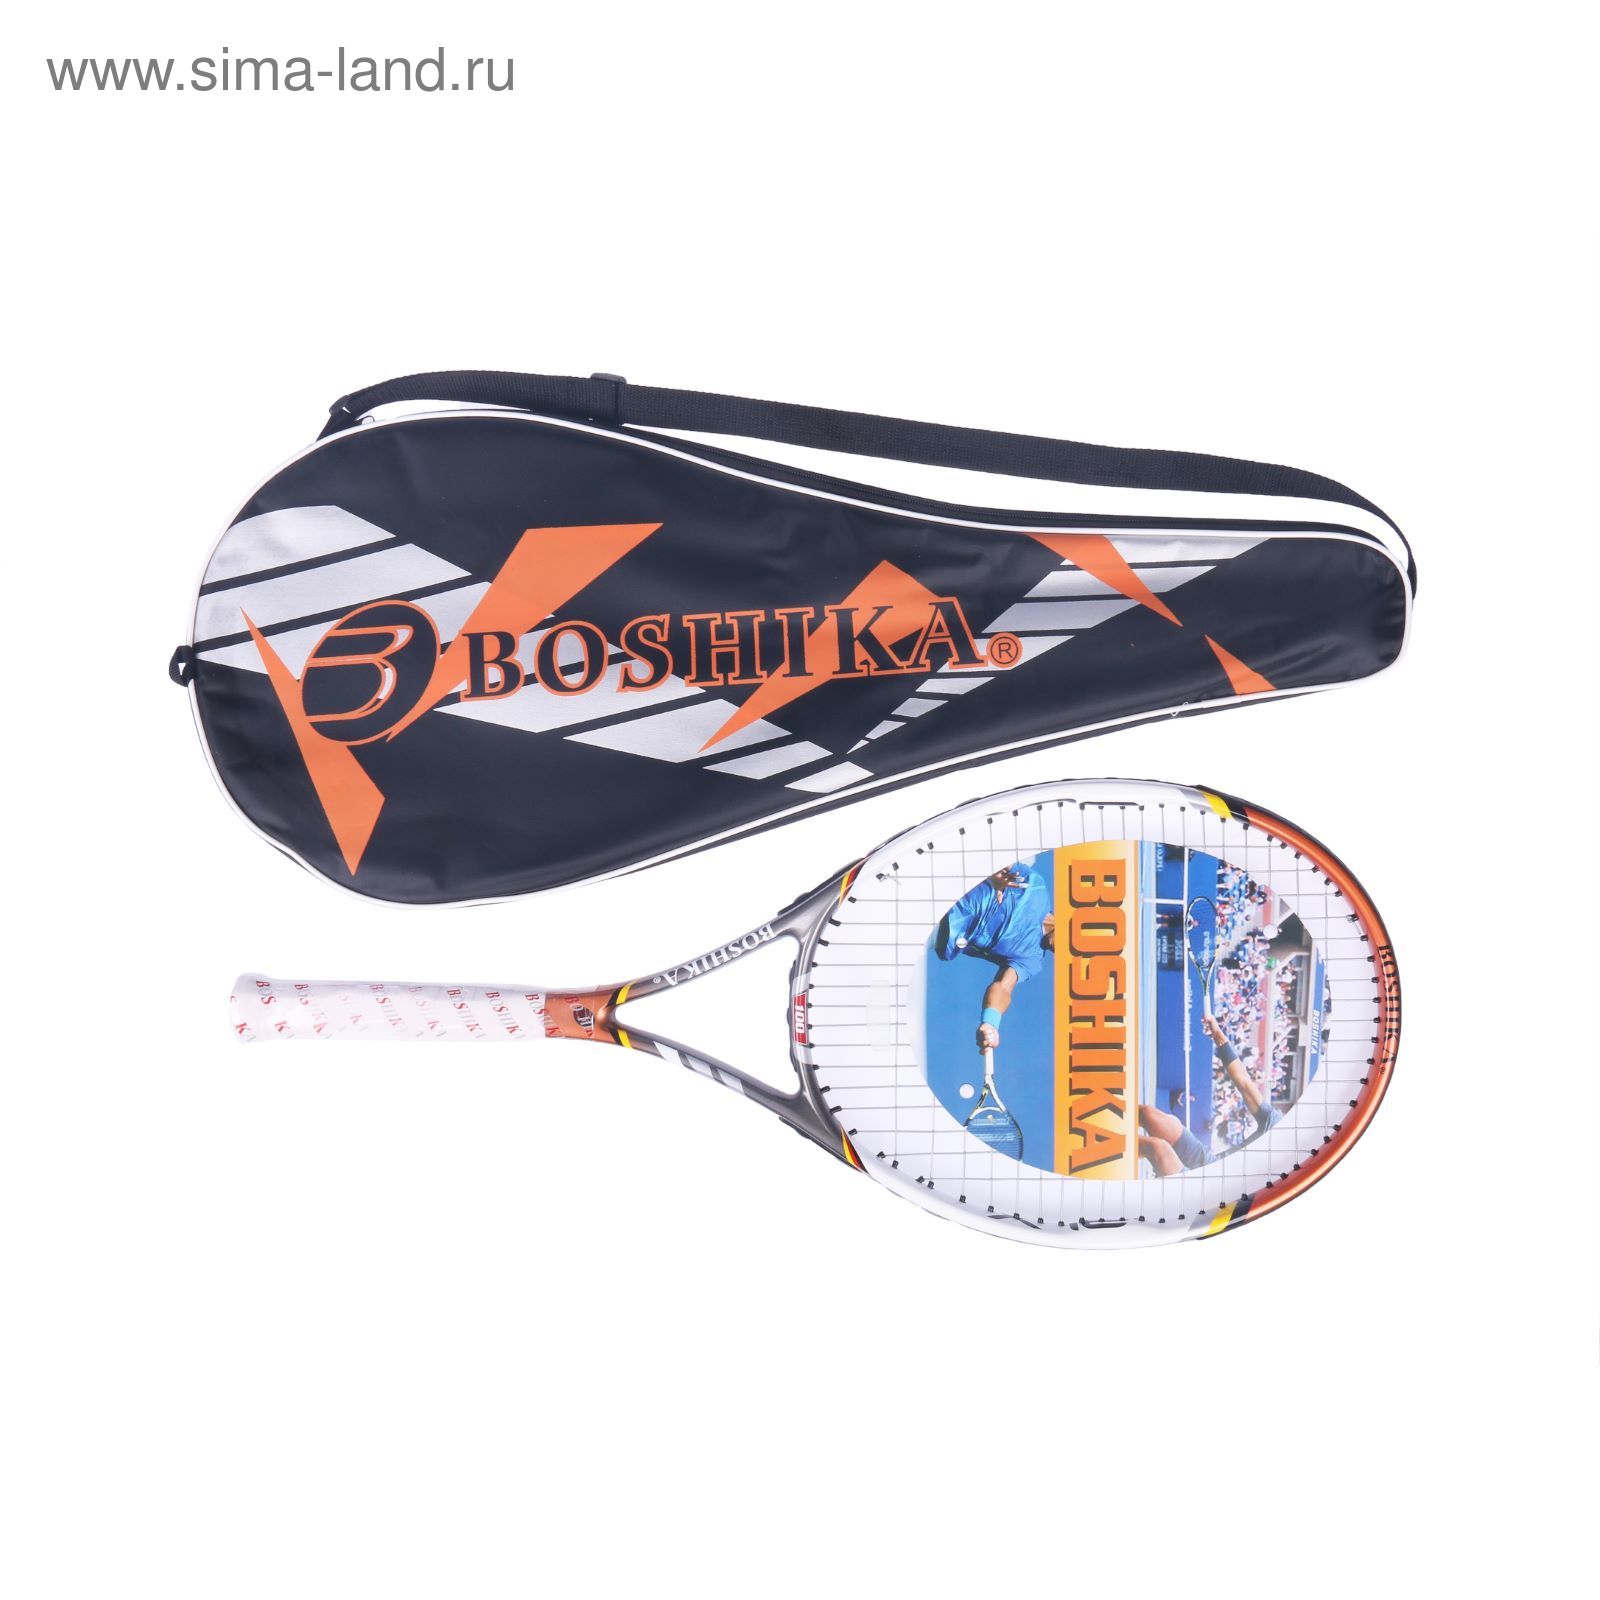 Ракетка для большого тенниса BOSHIKA 100 тренировочная, алюминиевая, 352 г, в чехле, цвет оранжевый